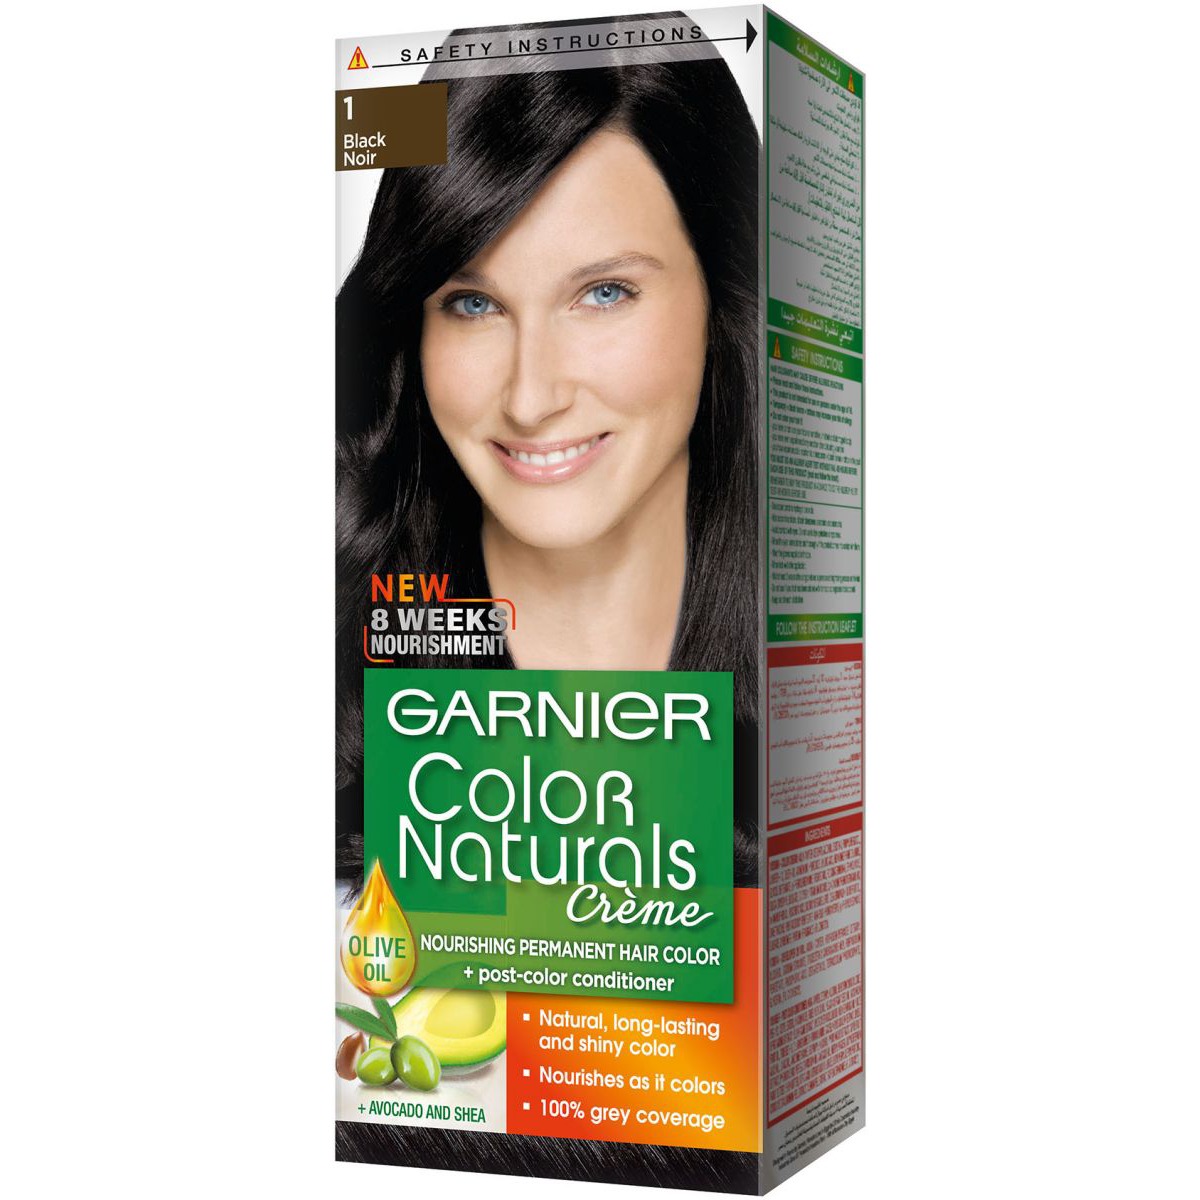 Garnier color naturals catalog